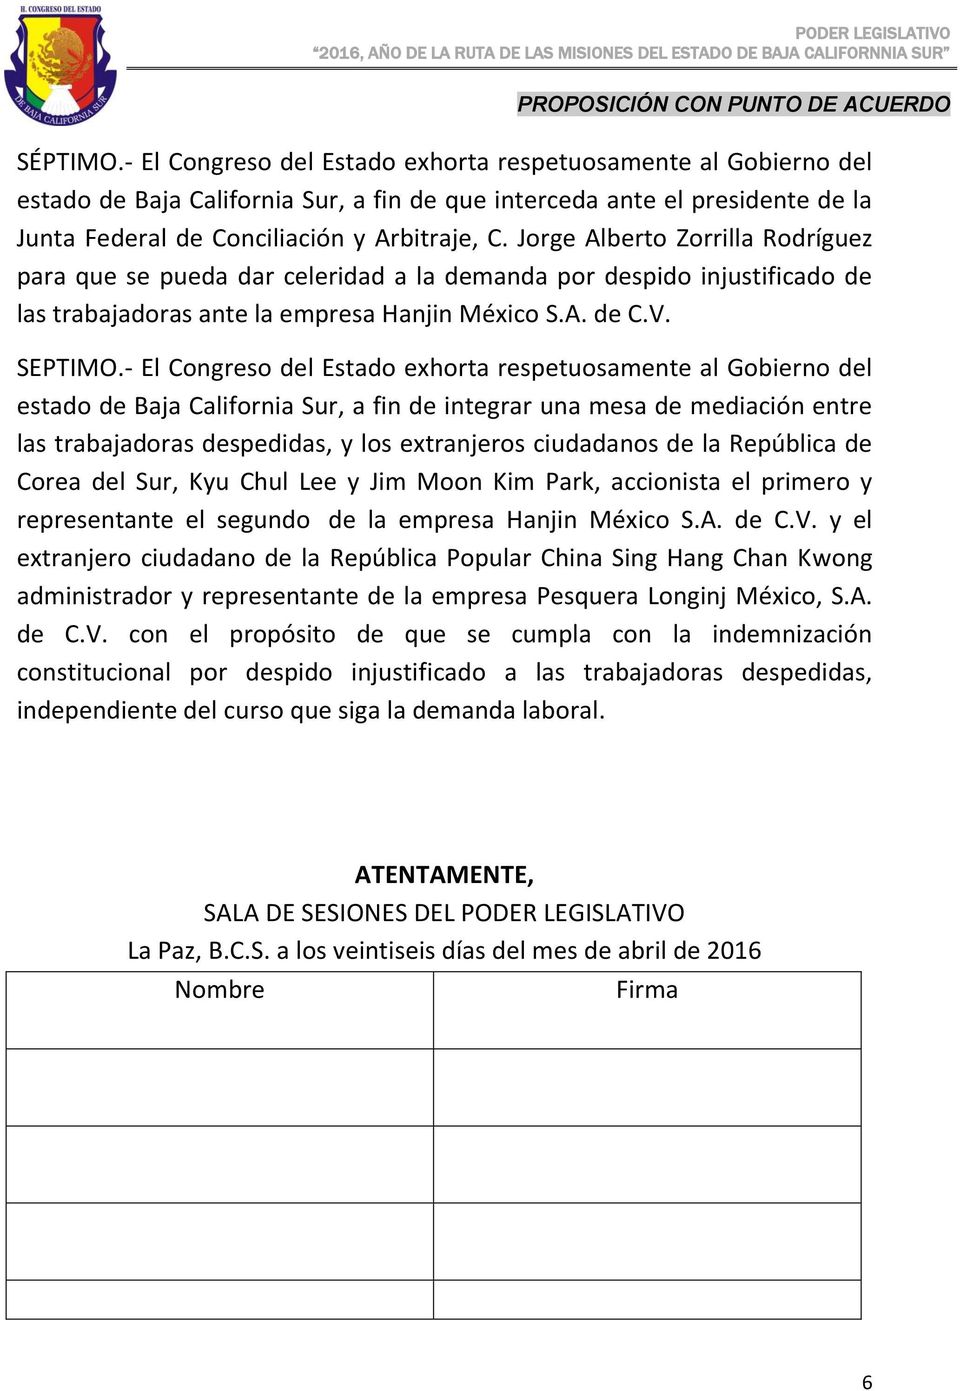 - El Congreso del Estado exhorta respetuosamente al Gobierno del estado de Baja California Sur, a fin de integrar una mesa de mediación entre las trabajadoras despedidas, y los extranjeros ciudadanos